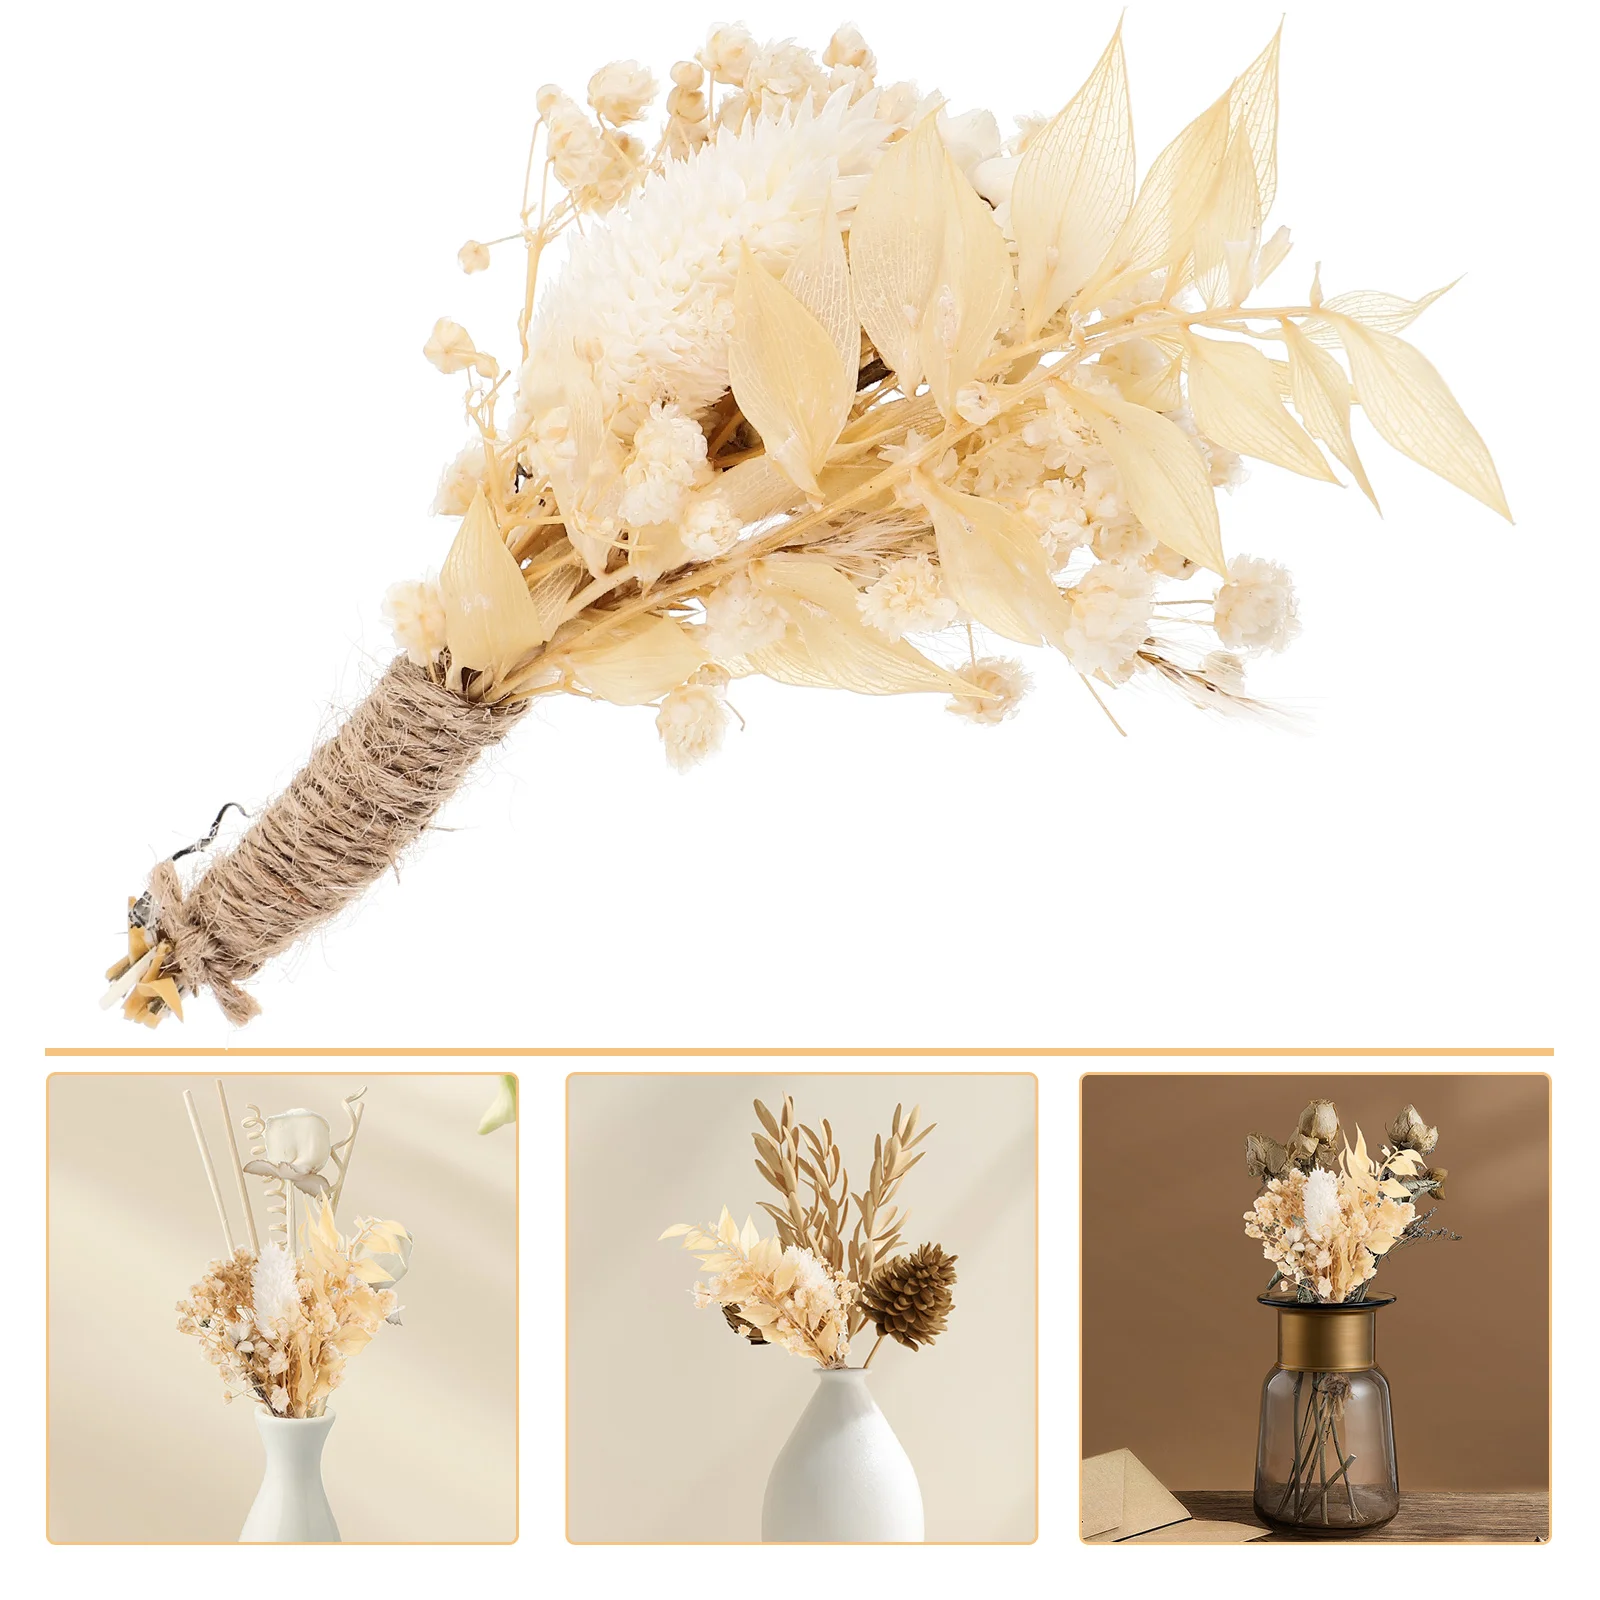 

1 Bundle of Dried Flowers Decorative Dried Hydrangea Bouquet Vase Bouquet Decor